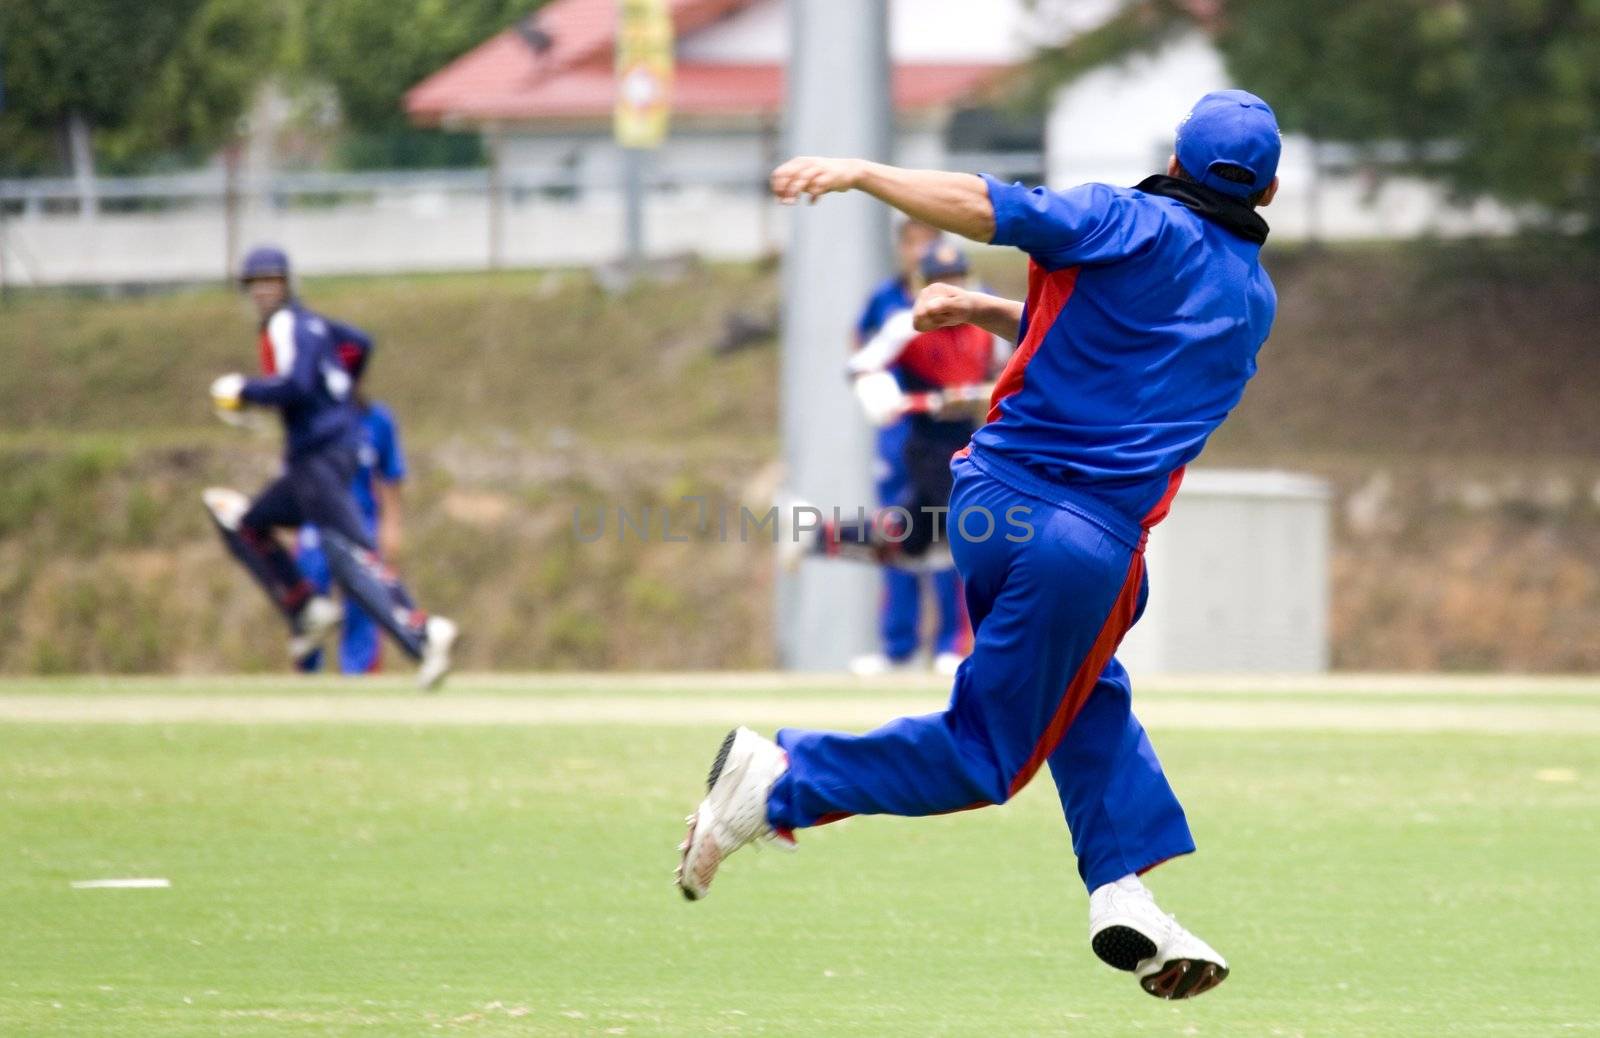 Cricket game fielder in action.